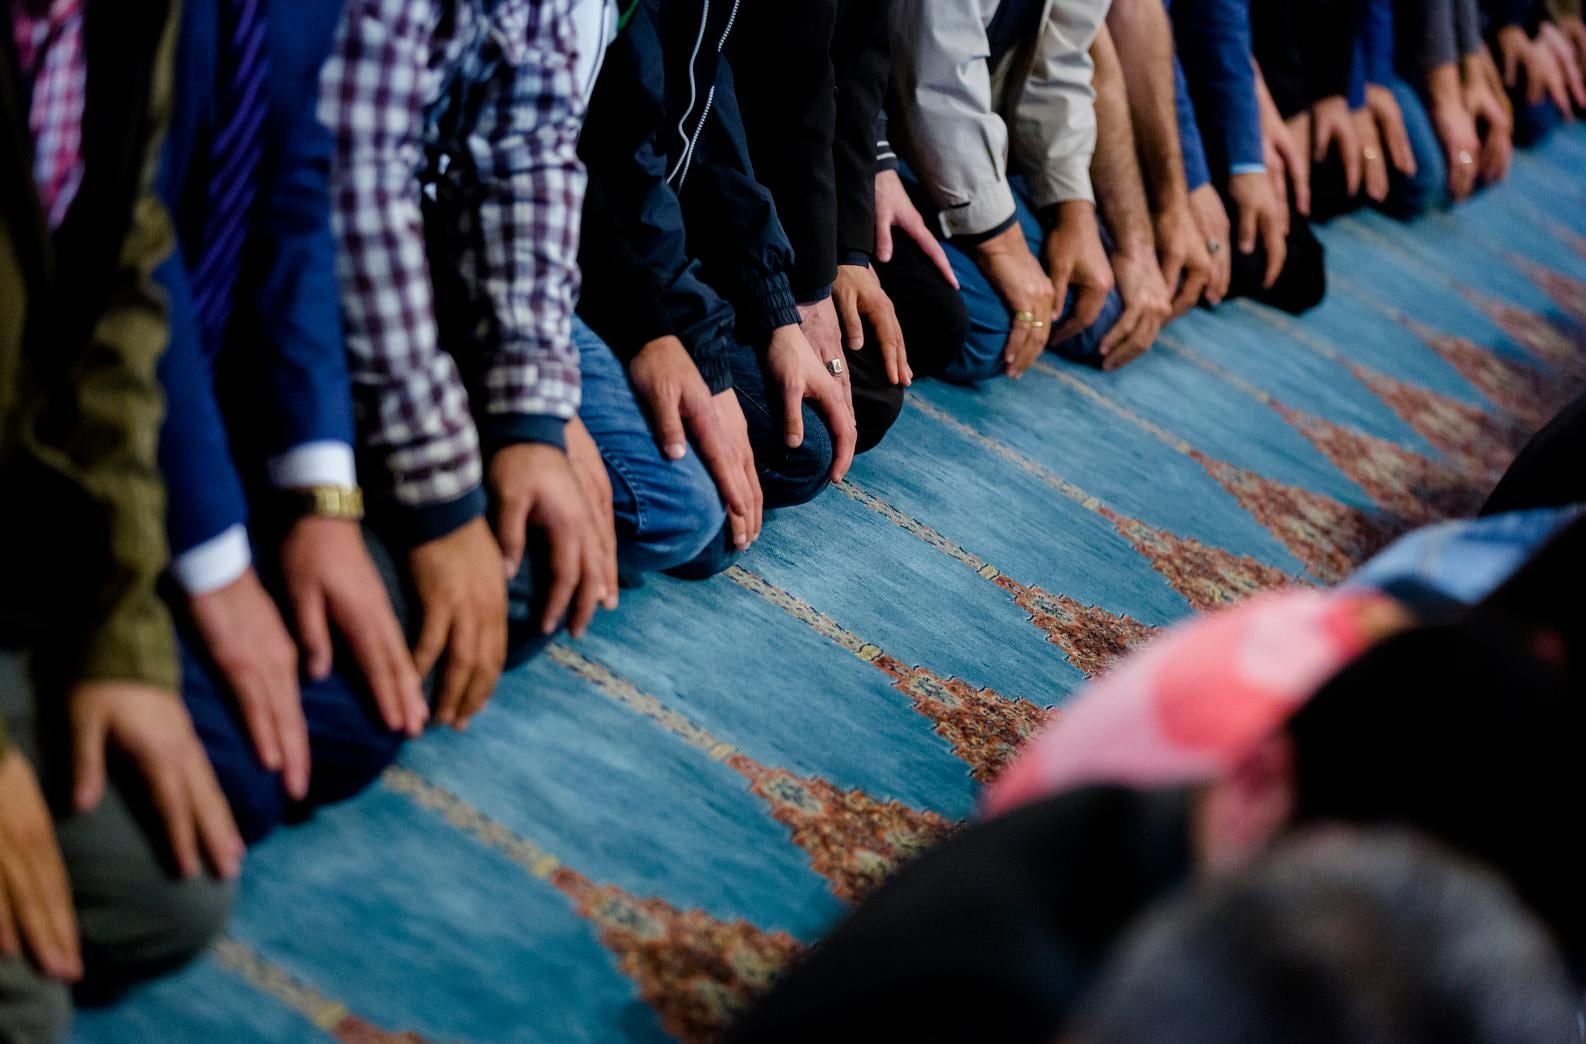 Nederlandse moslim voelt zich vaker gediscrimineerd en minder verbonden met Nederland